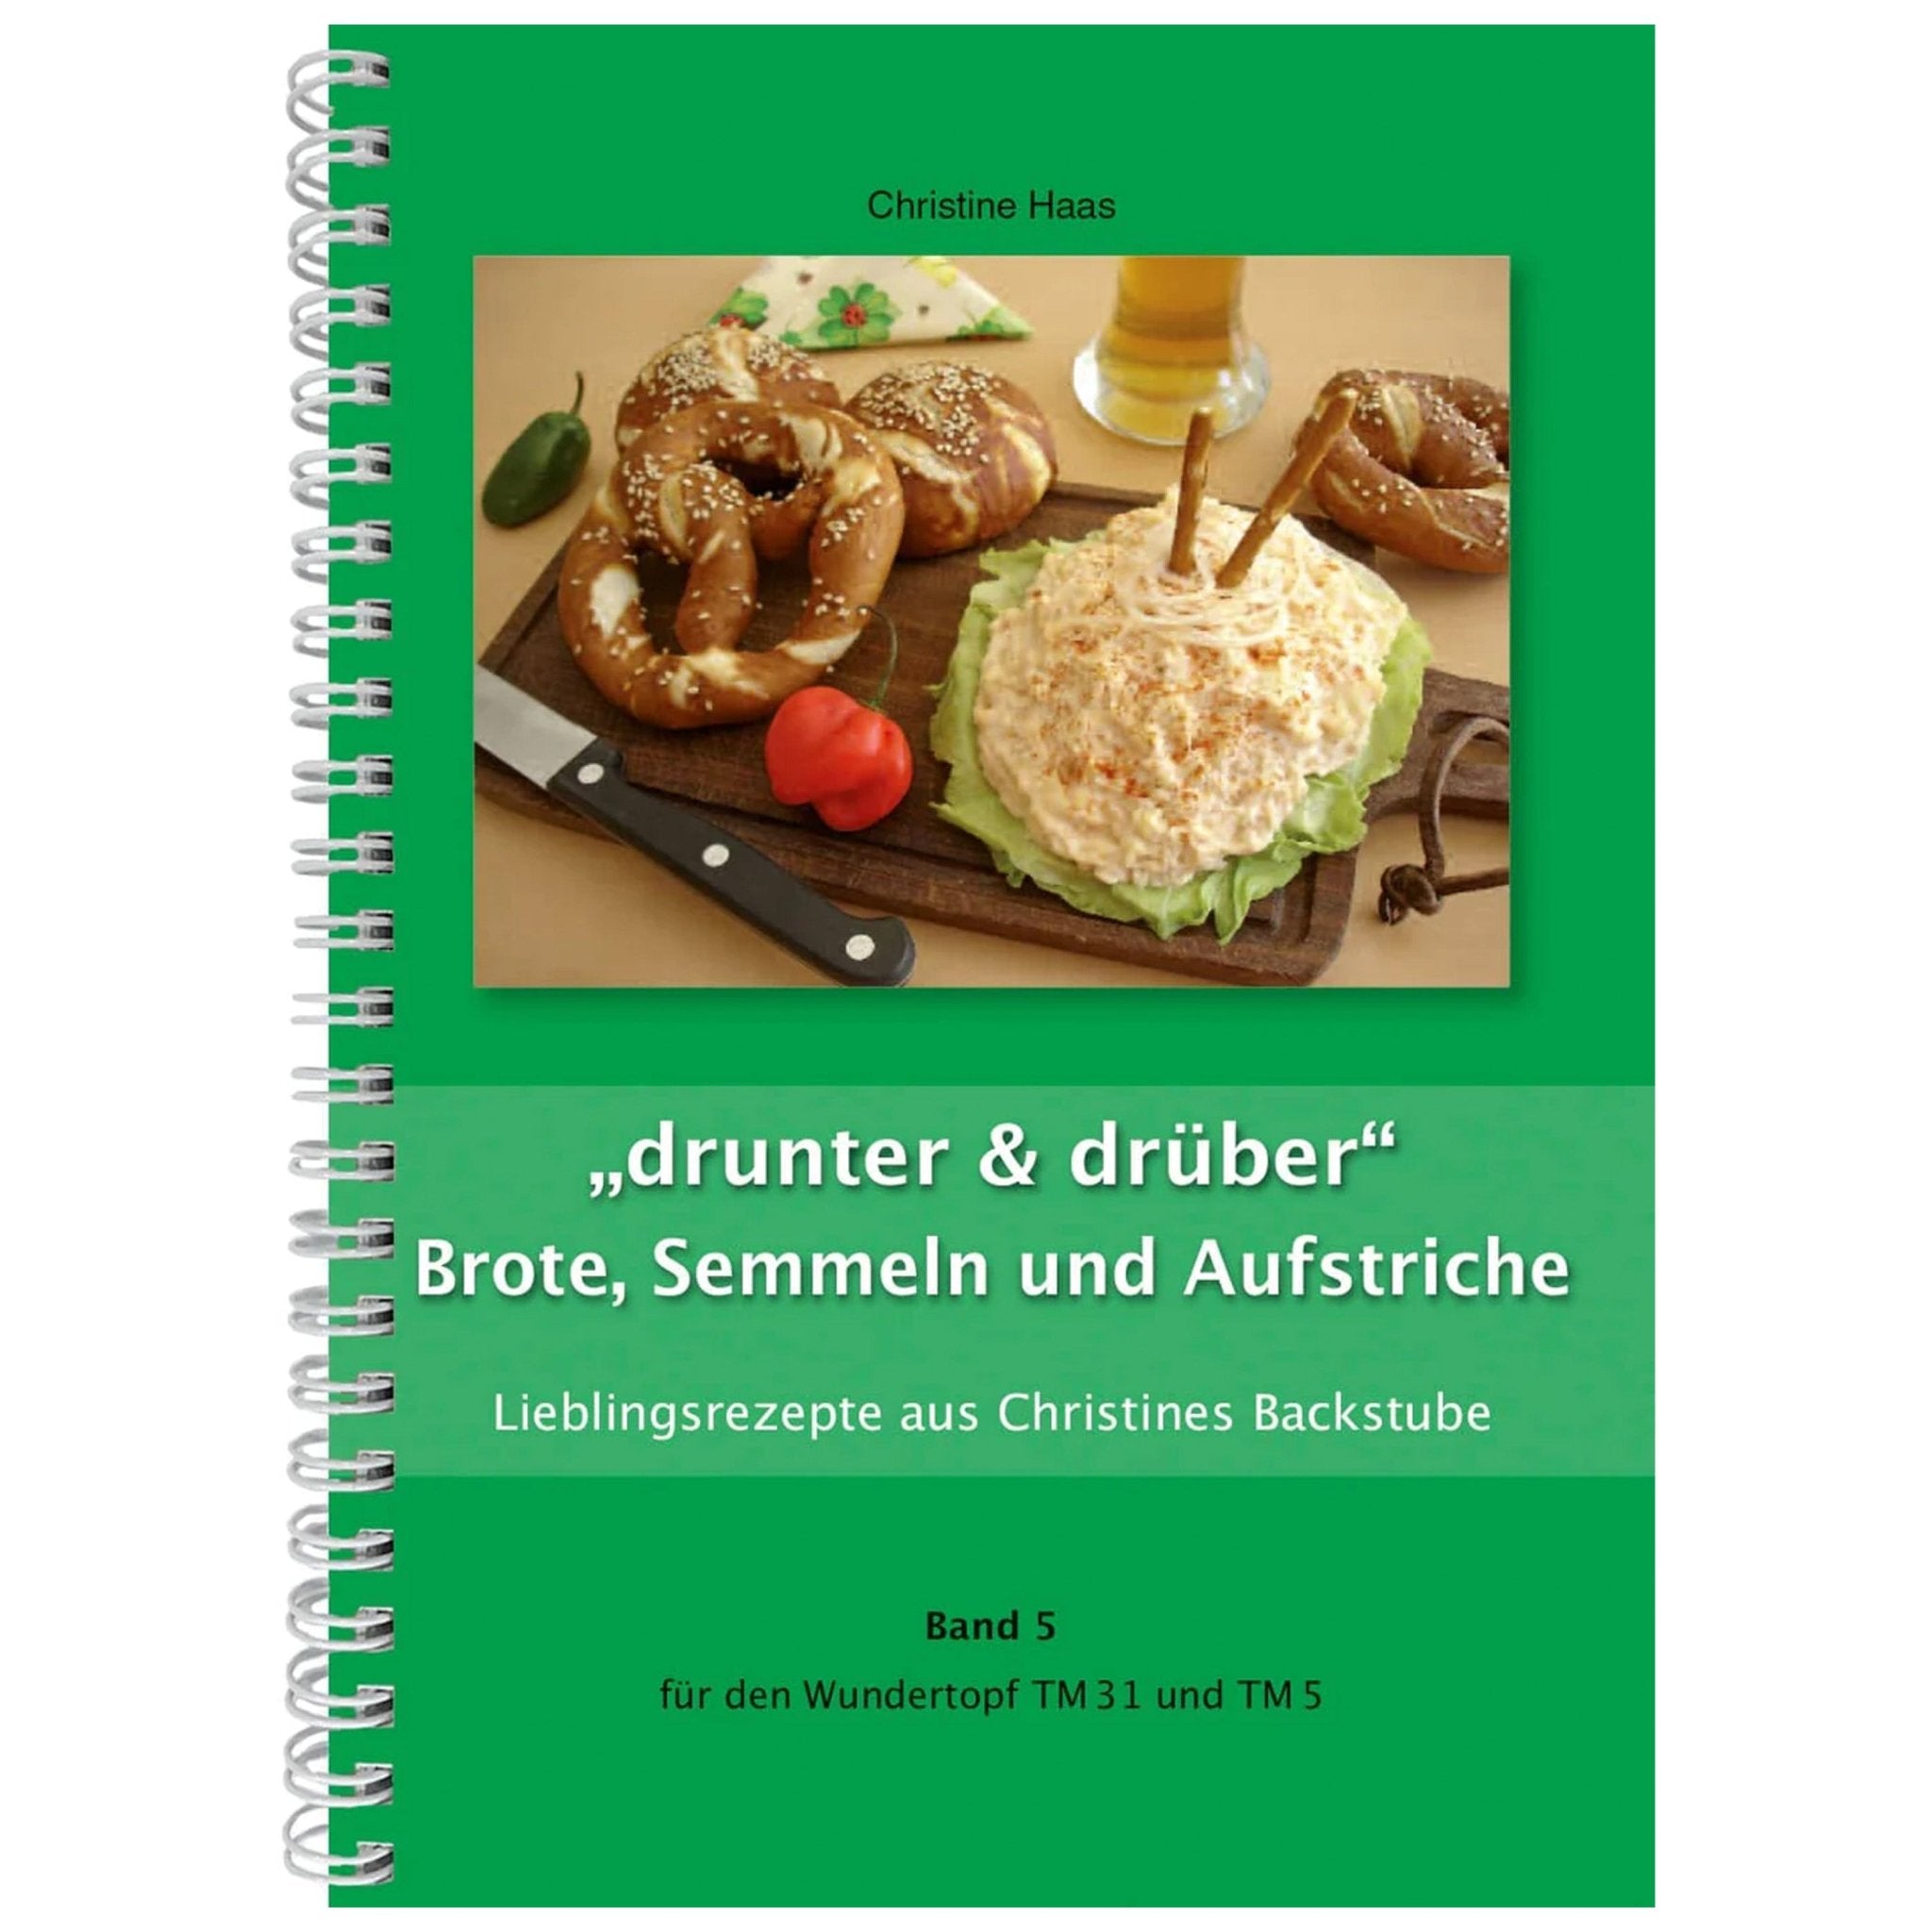 "drunter & drüber" Brote, Semmeln und Aufstriche | Christine Haas | Band 5 - Wundermix GmbH